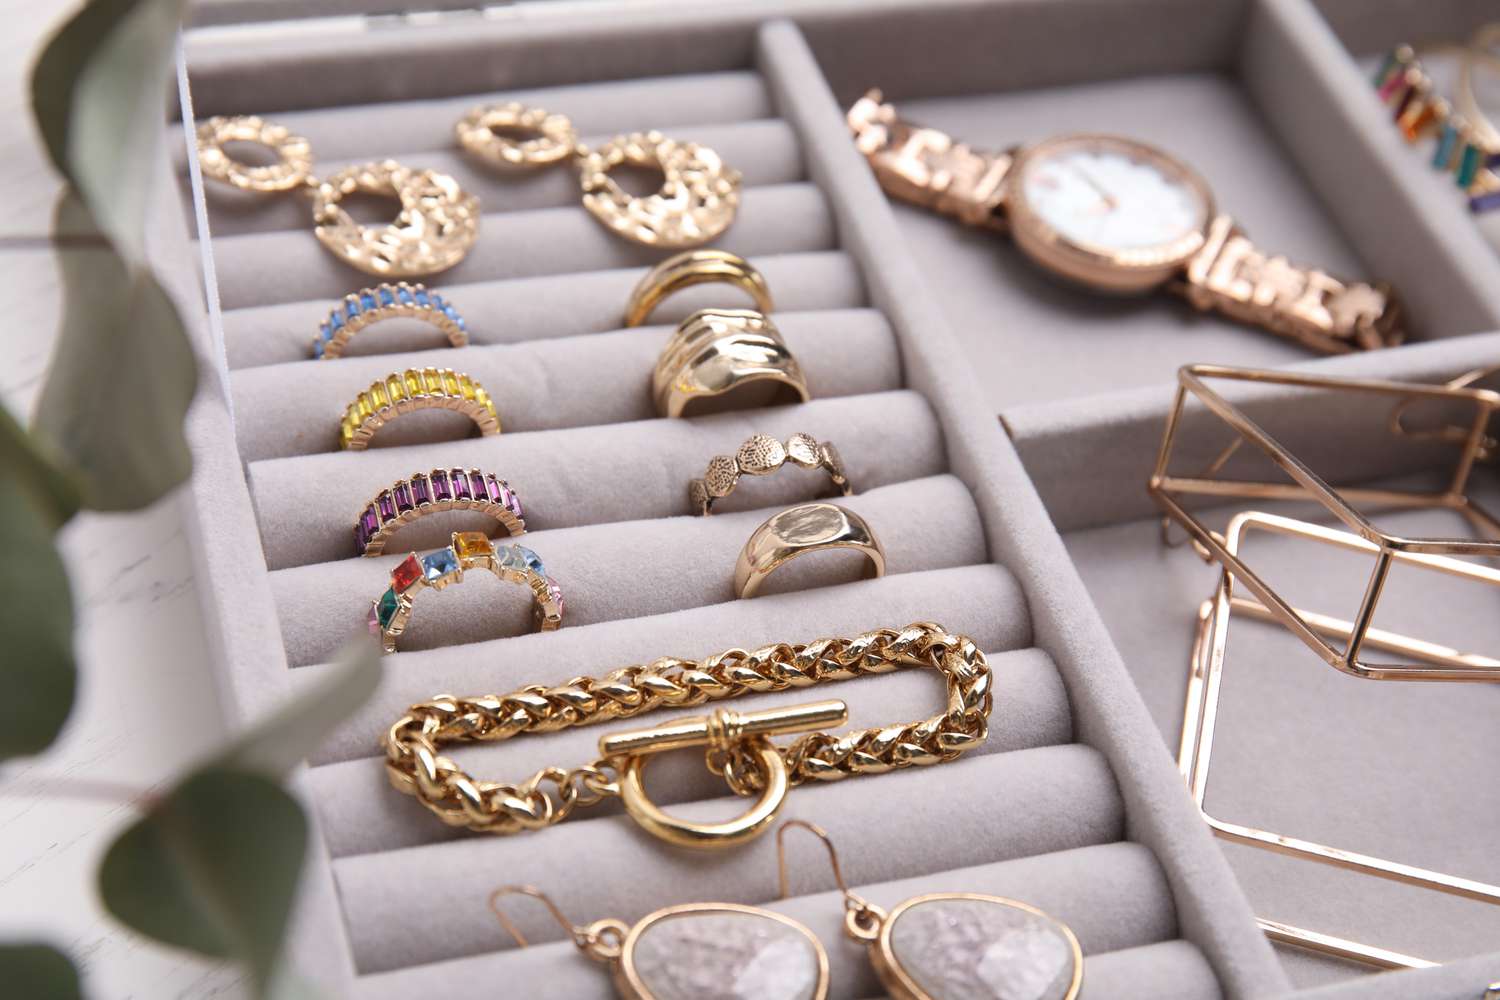 Organized jewelry